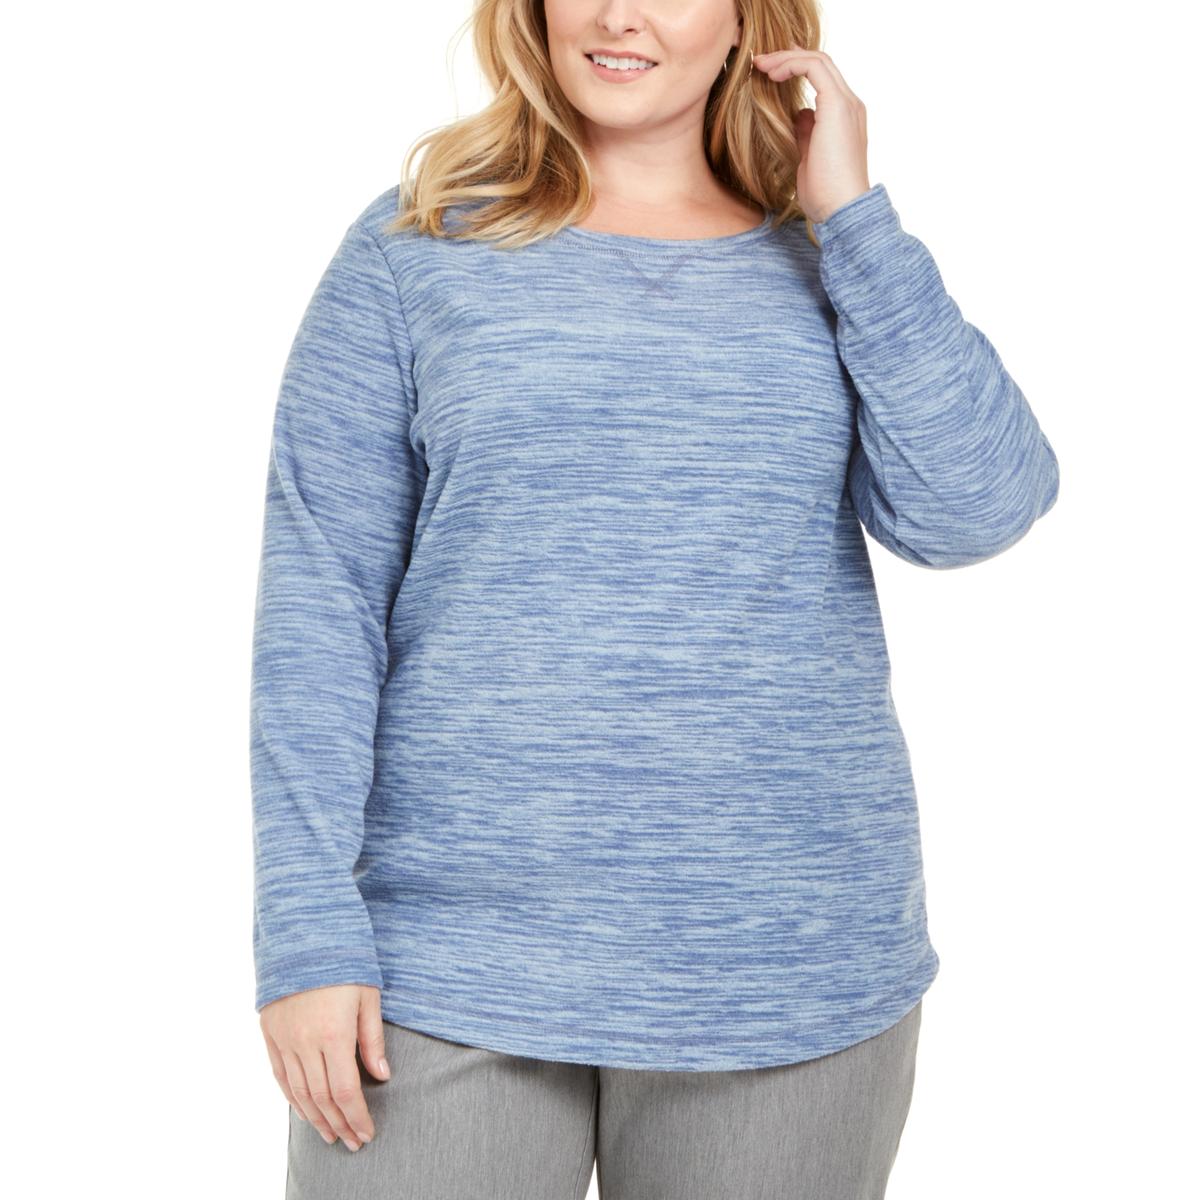 Karen Scott Sport Womens Blue Comfy Shirts & Tops Loungewear Plus 2X ...